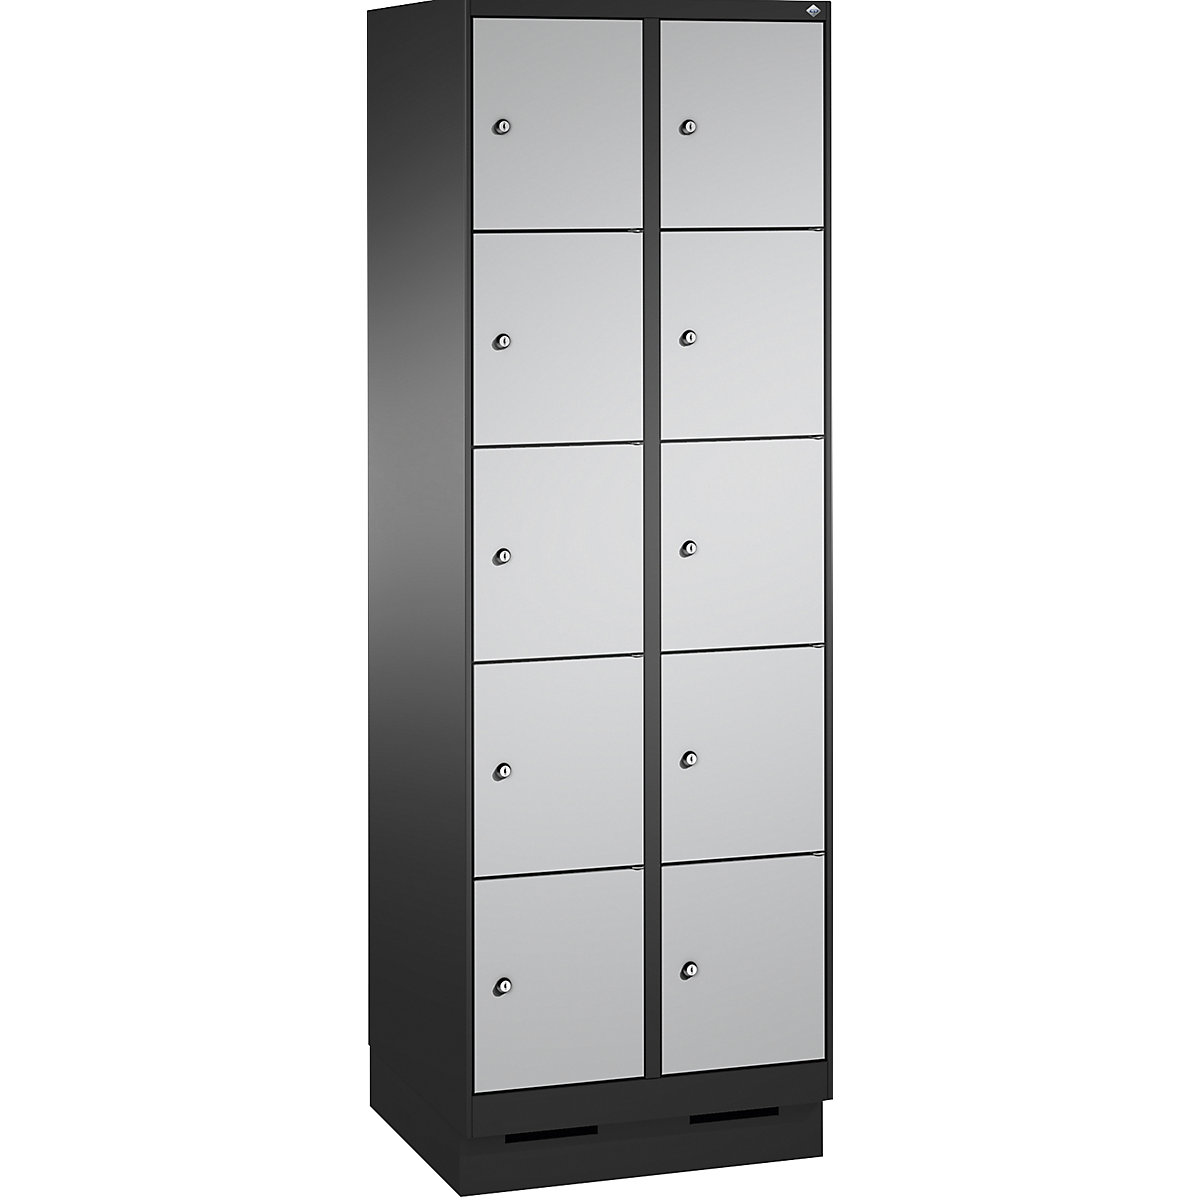 Armoire à casiers sur socle EVOLO – C+P, 2 compartiments, 5 casiers chacun, largeur compartiments 300 mm, gris noir / aluminium-9